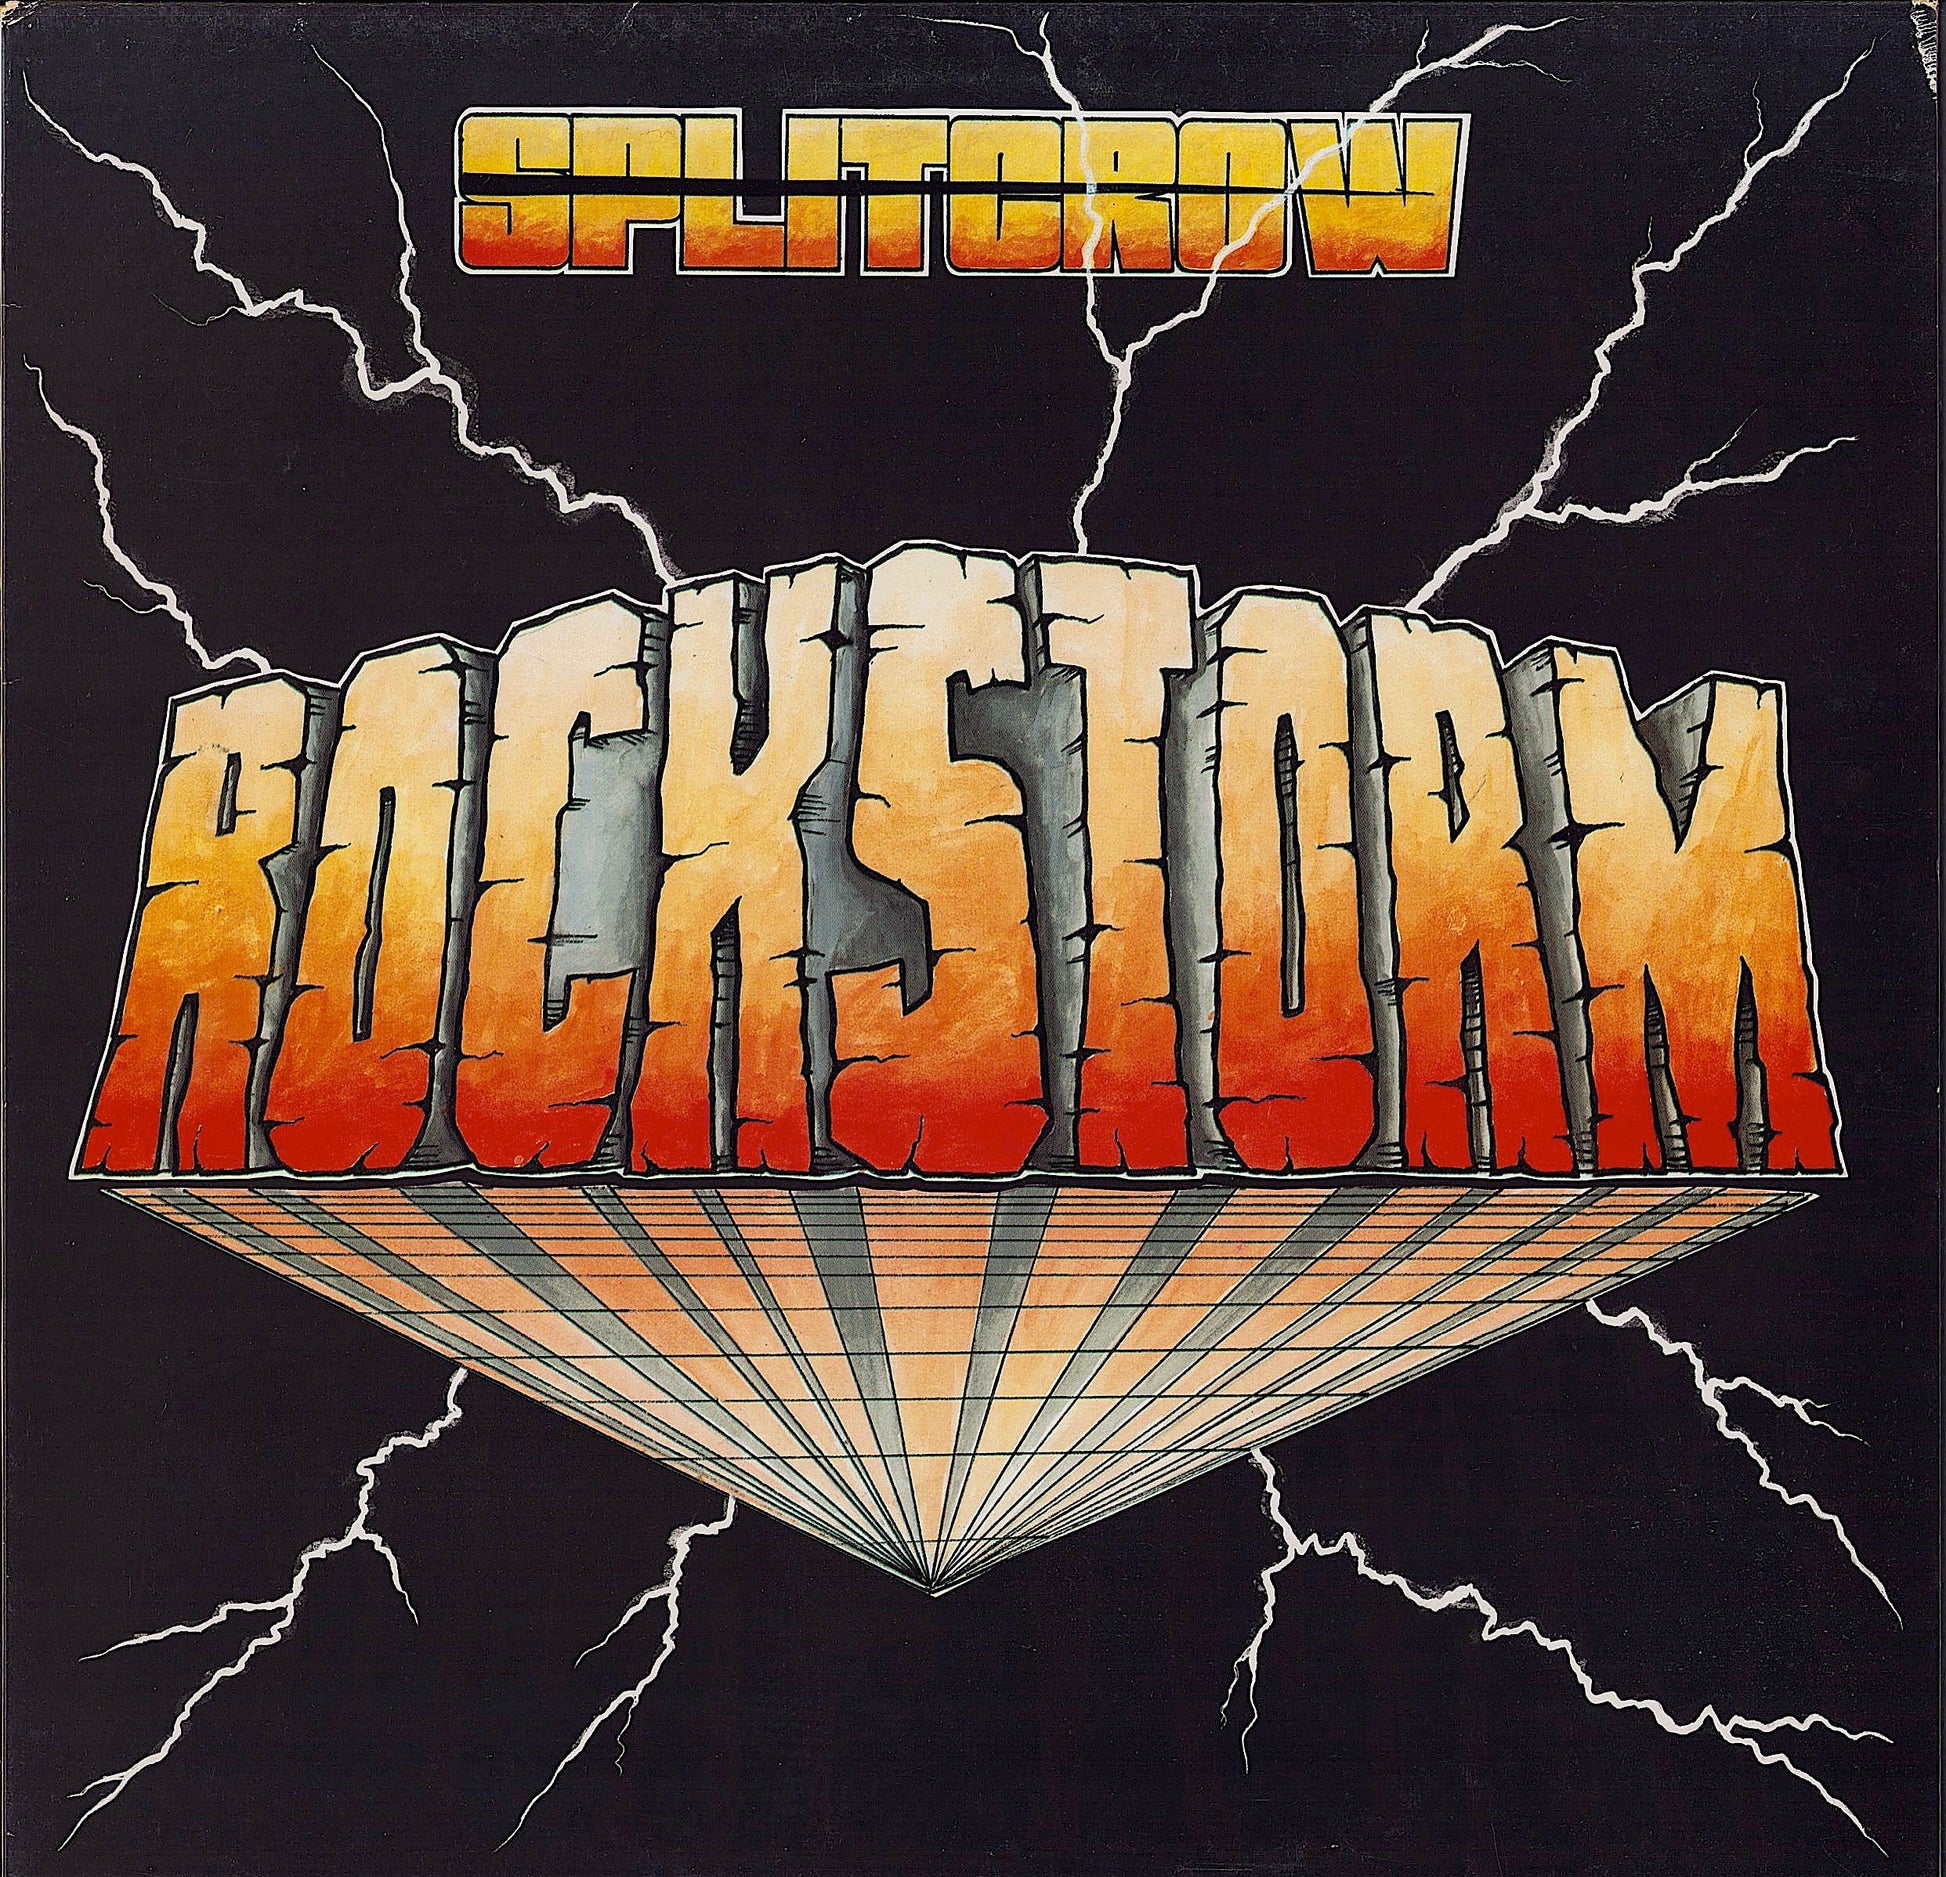 Splitcrow - Rockstorm (Vinyl LP)